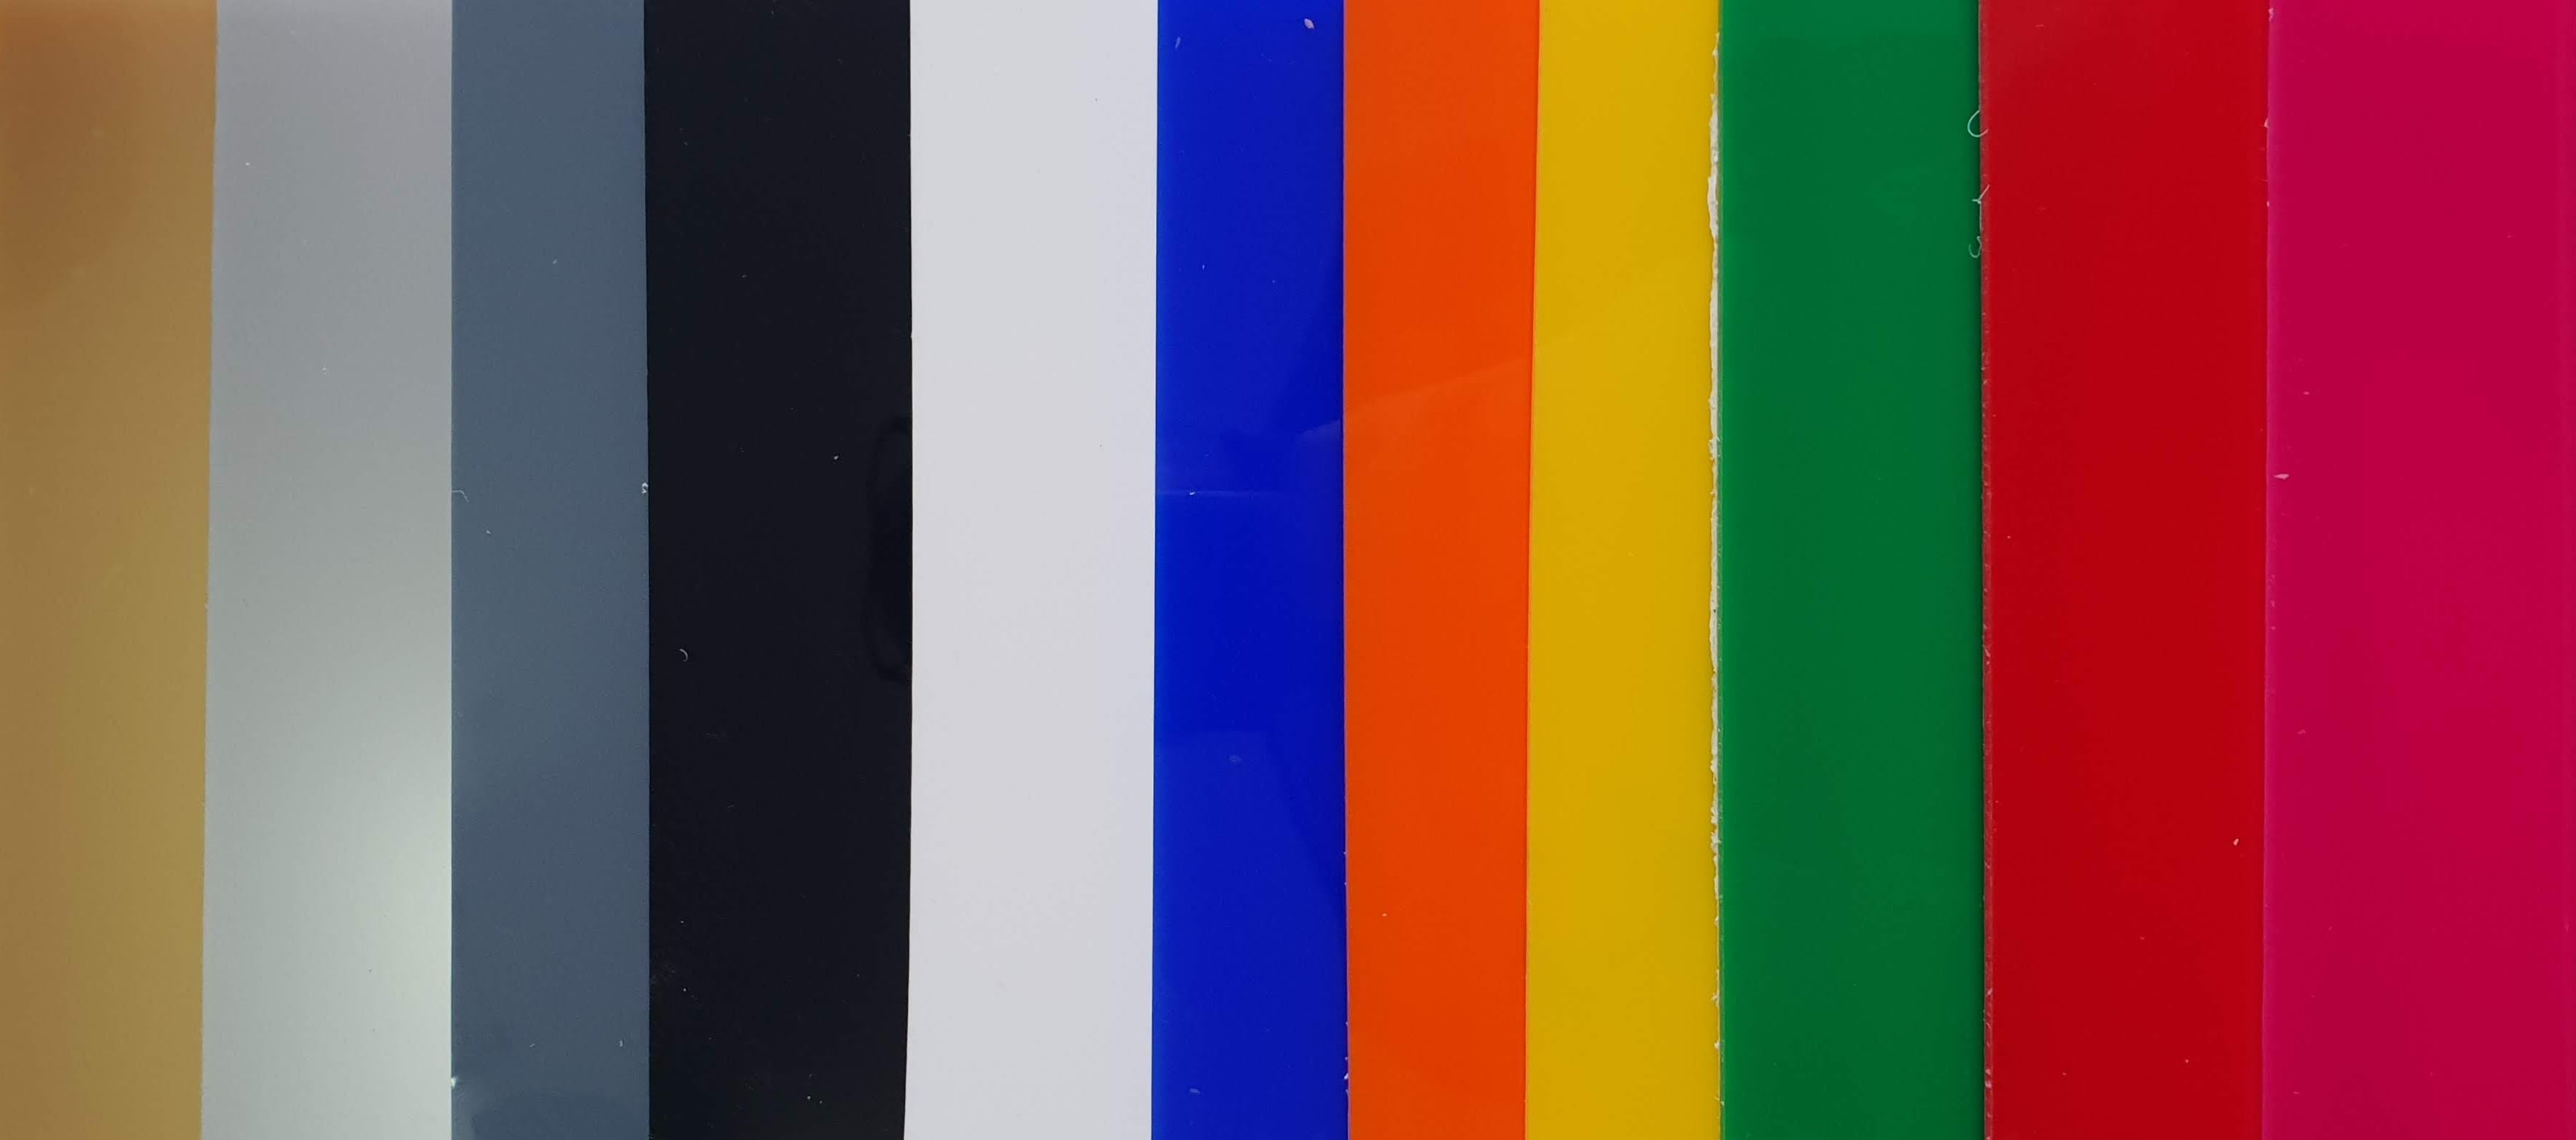 Lastre plexiglass metacrilato colorato coprente, 3 mm, taglio pannelli su  misura, con sagomatura personalizzata compresa nel prezzo : .it:  Commercio, Industria e Scienza